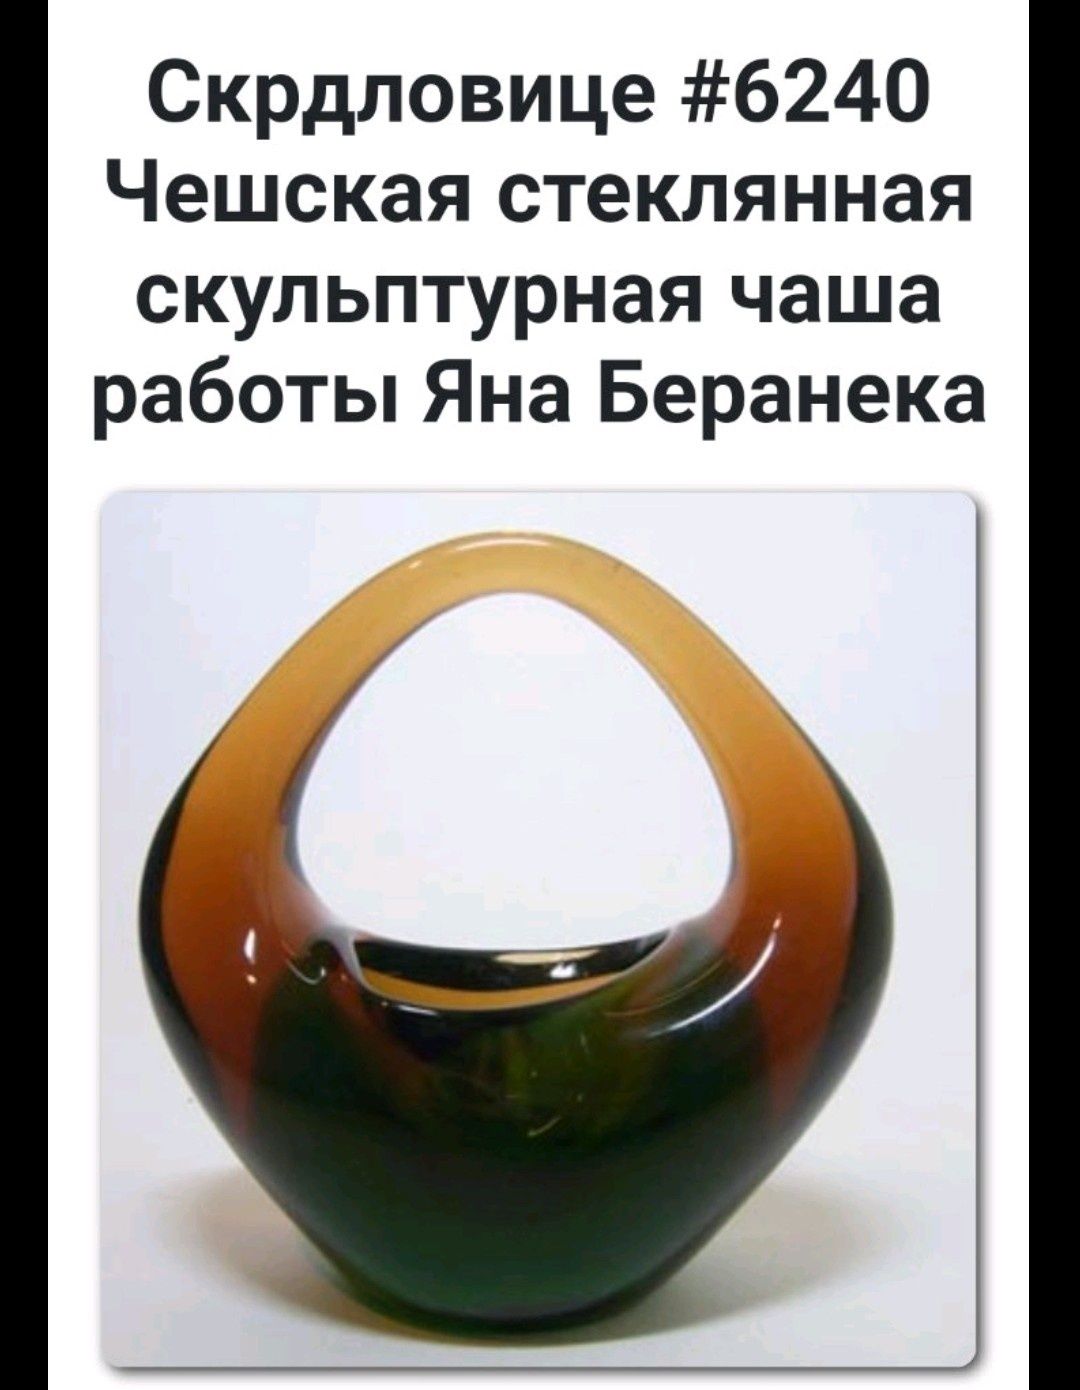 Чешская дизайнерская винтажная ваза по дизайну Жана Баранека